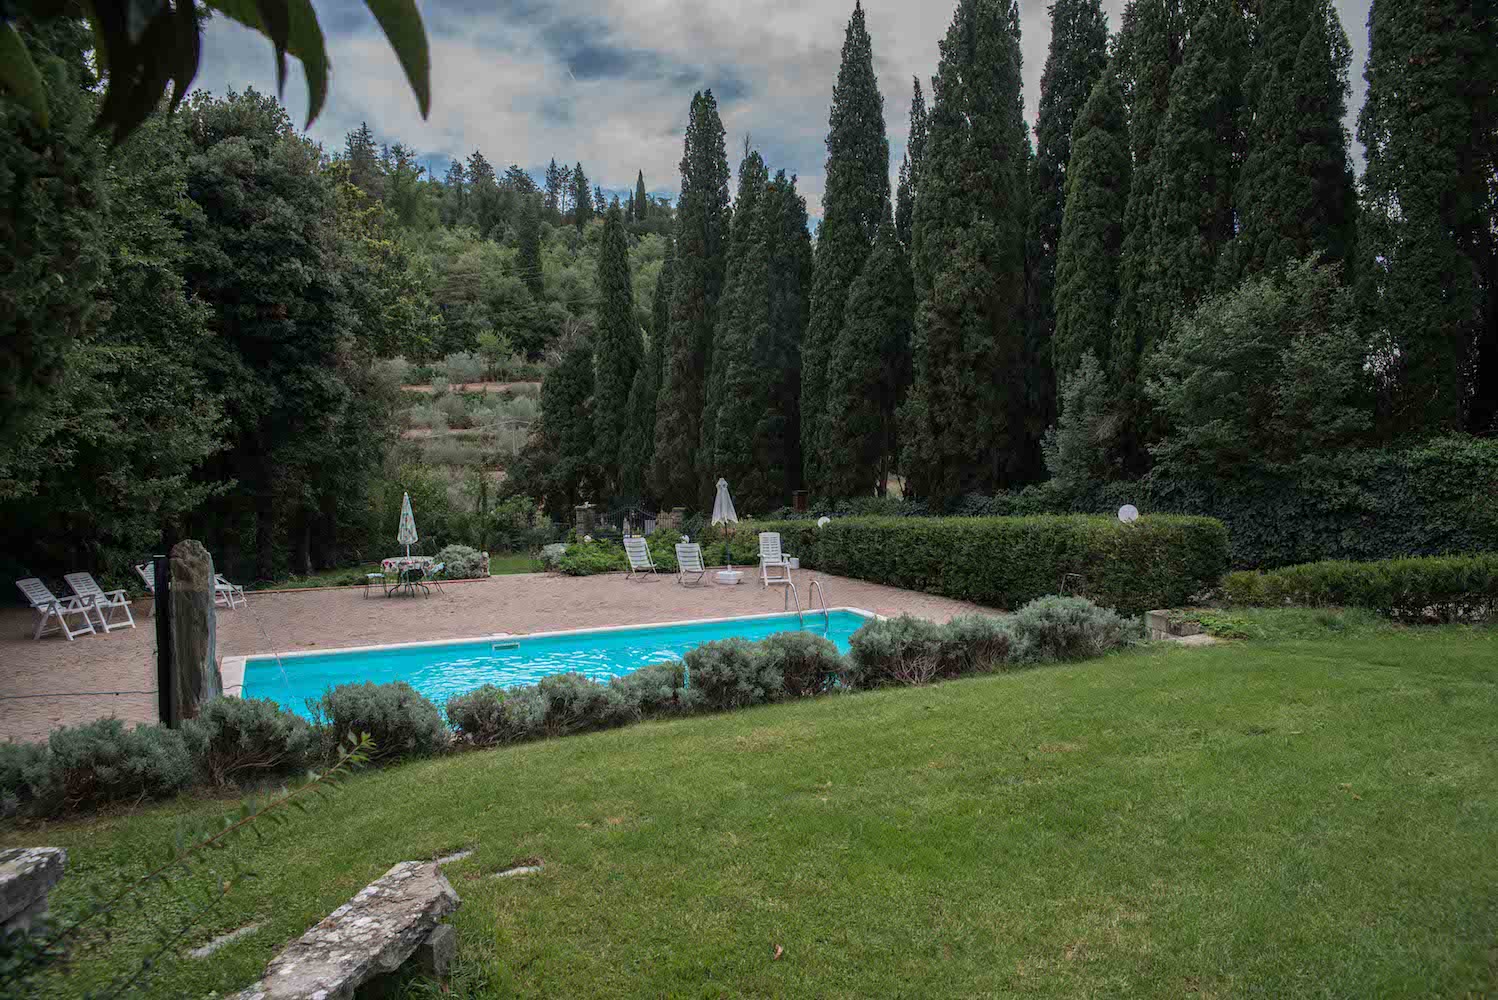 Villa Sargiano